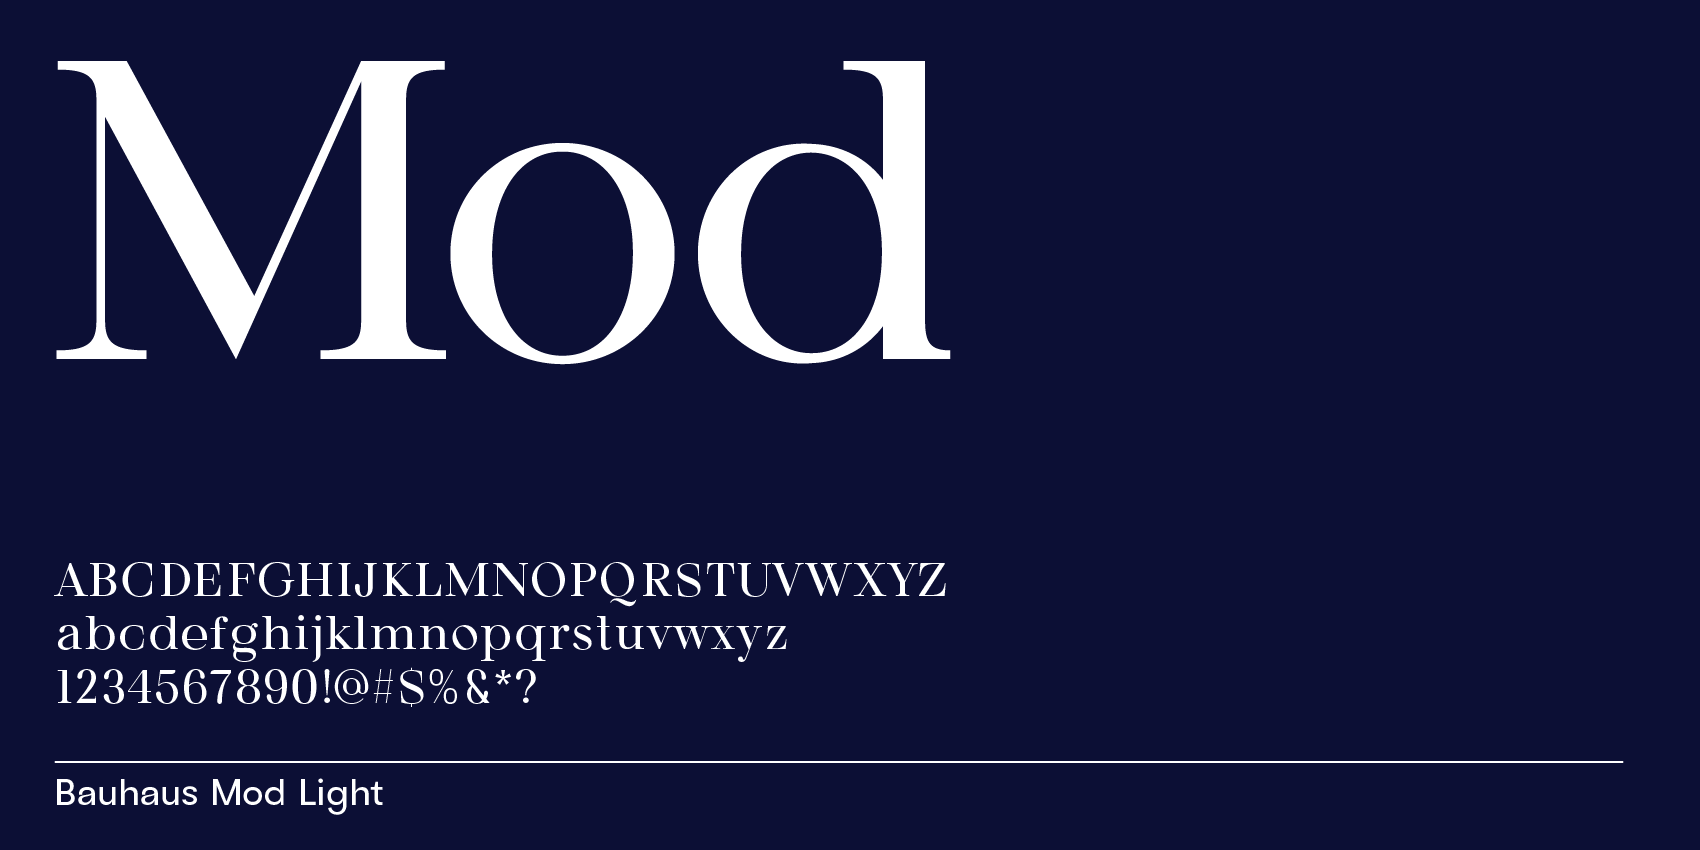 Bauhaus Mod, modern serif font with open forms